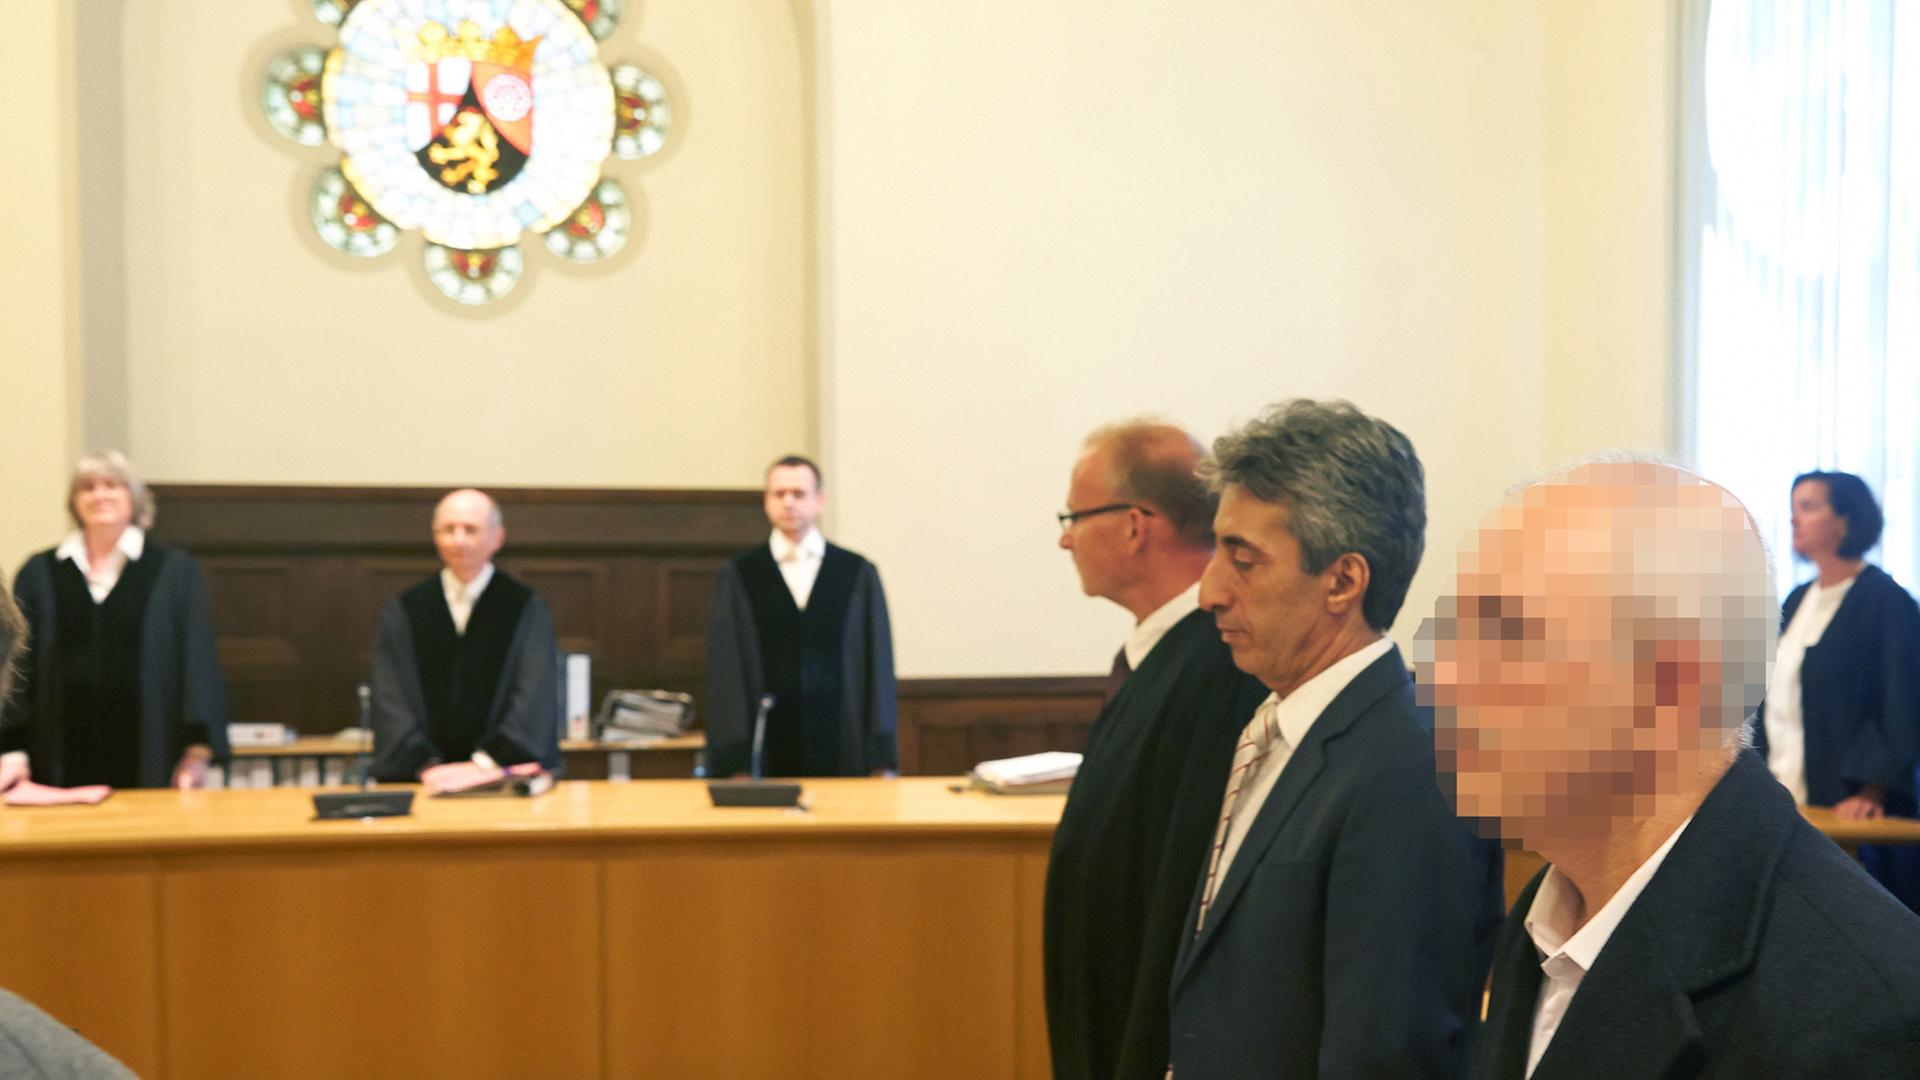 Der Angeklagte Muhammed G. (rechts) sitzt am 9. September 2015 im Gerichtssaal des Oberlandesgerichts in Koblenz. Ihm und zwei weiteren Angeklagten wird vorgeworfen, in Deutschland lebende Kritiker des türkischen Staatschefs Erdogan ausspioniert zu haben.